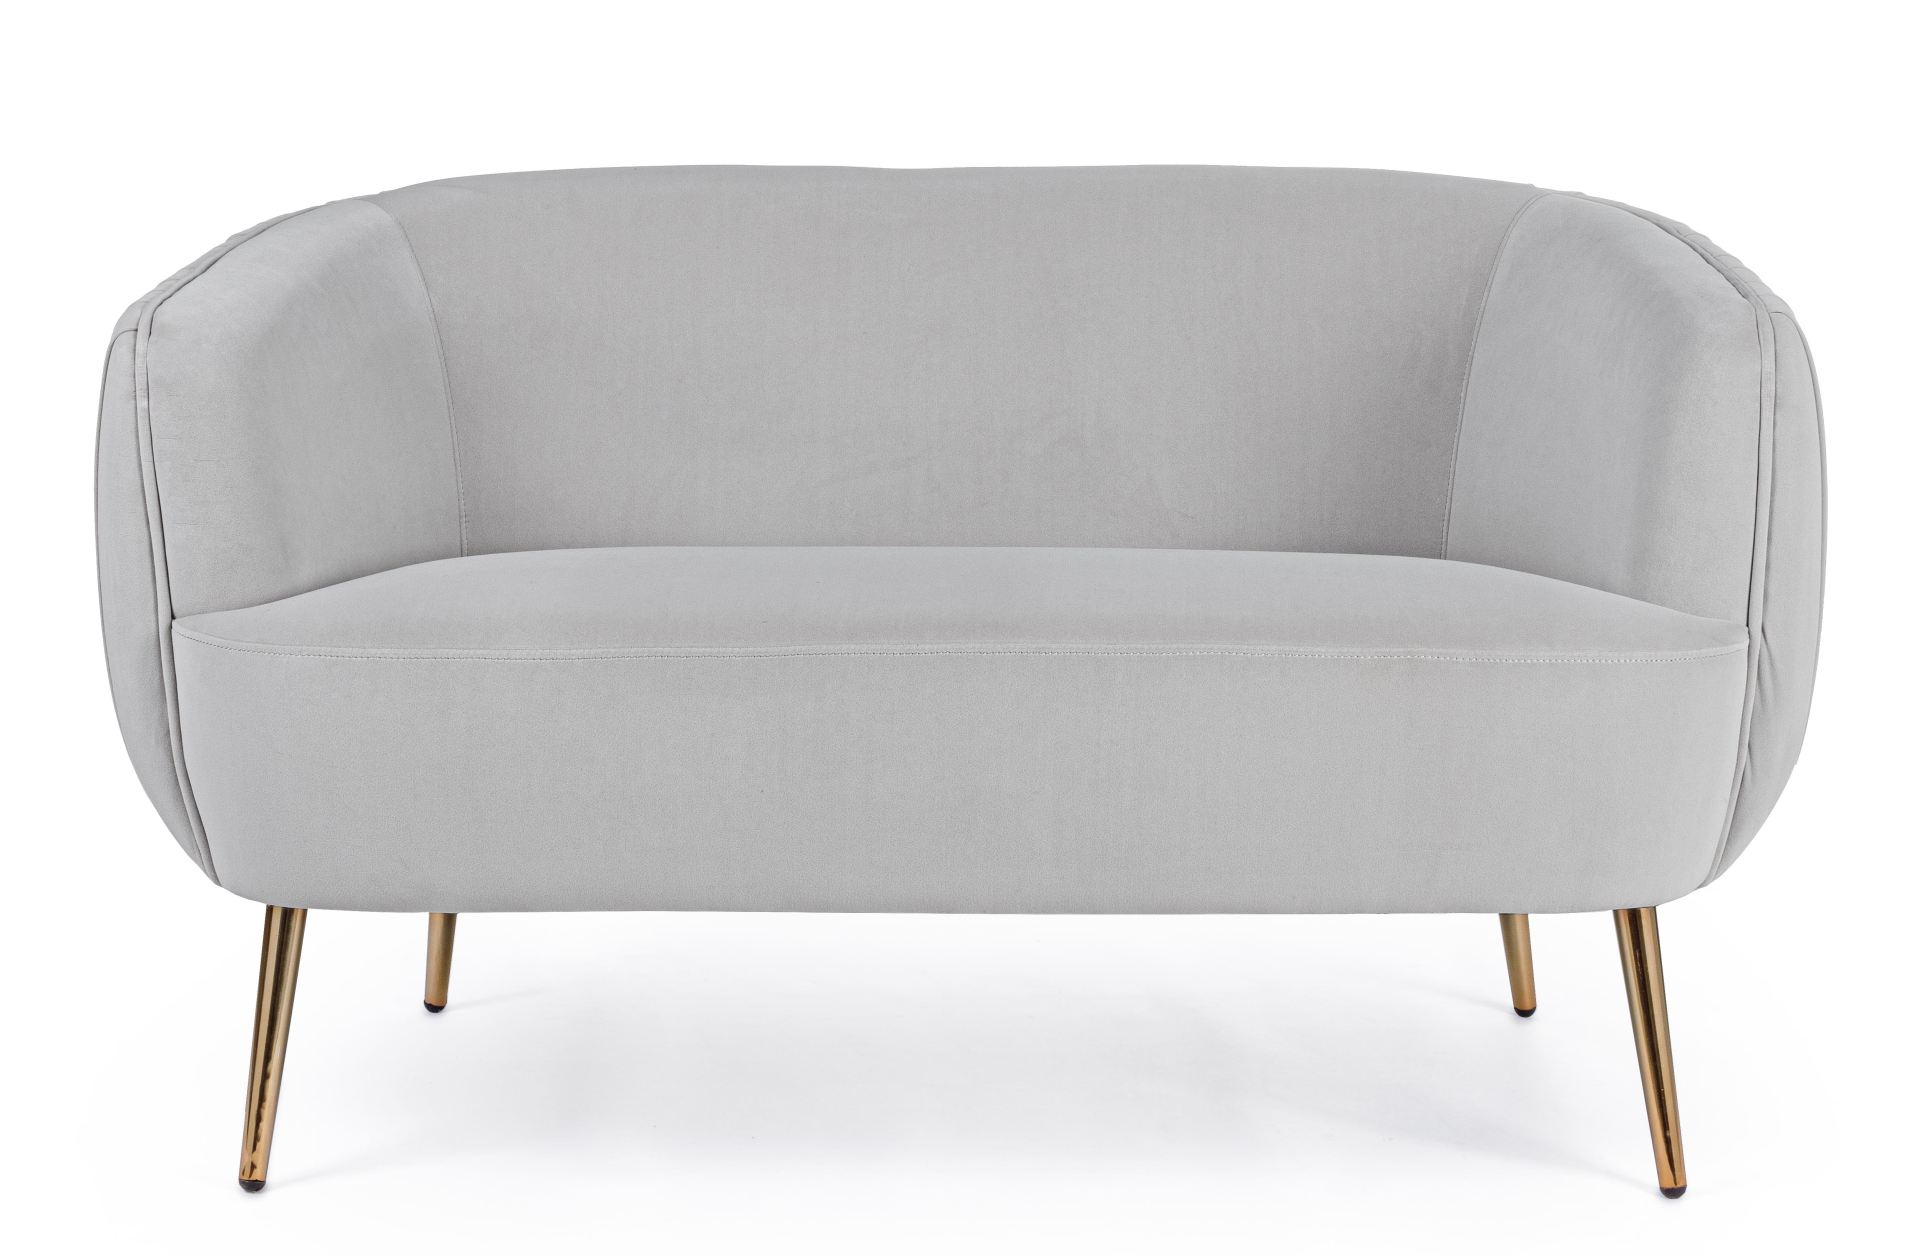 Das Sofa Linsey überzeugt mit seinem modernen Design. Gefertigt wurde es aus Stoff in Samt-Optik, welcher einen hellgrauen Farbton besitzt. Das Gestell ist aus Metall und hat eine goldene Farbe. Das Sofa ist in der Ausführung als 2-Sitzer. Die Breite betr